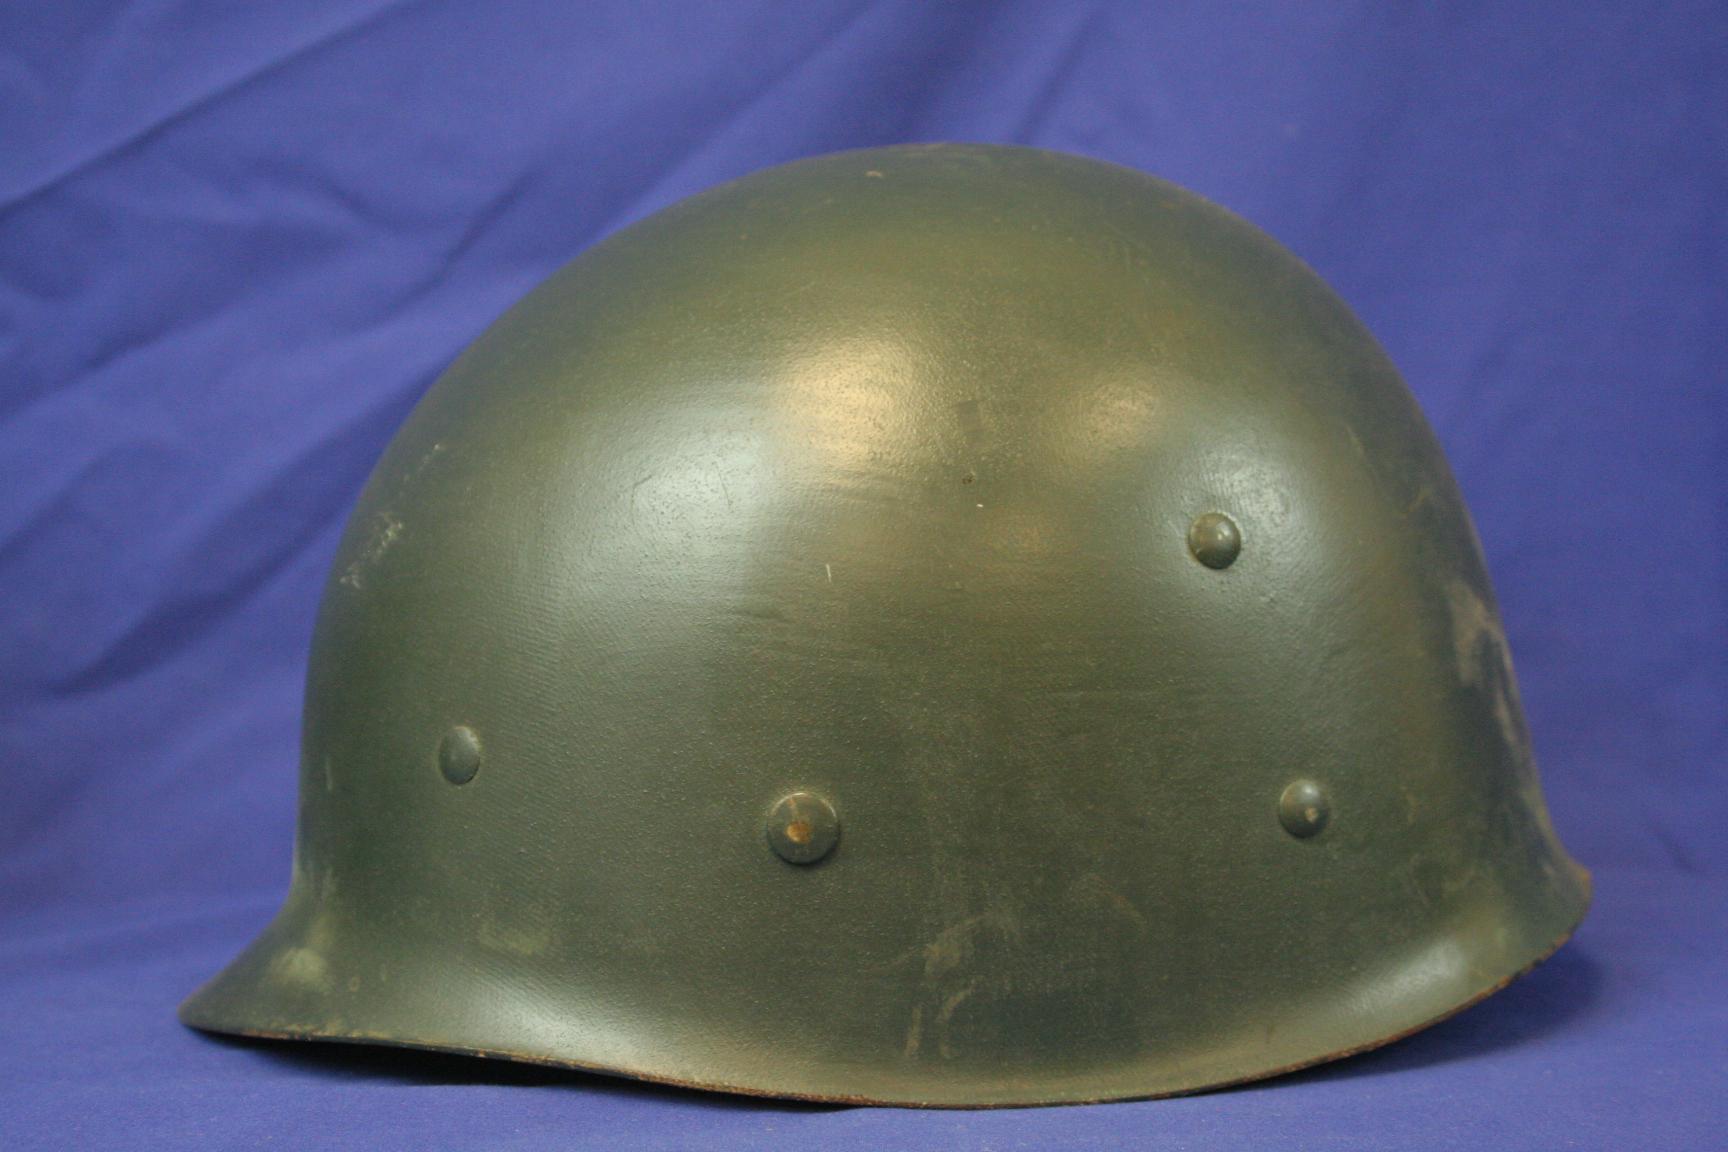 WW2 Vintage Helmet Repurposed by SFPD